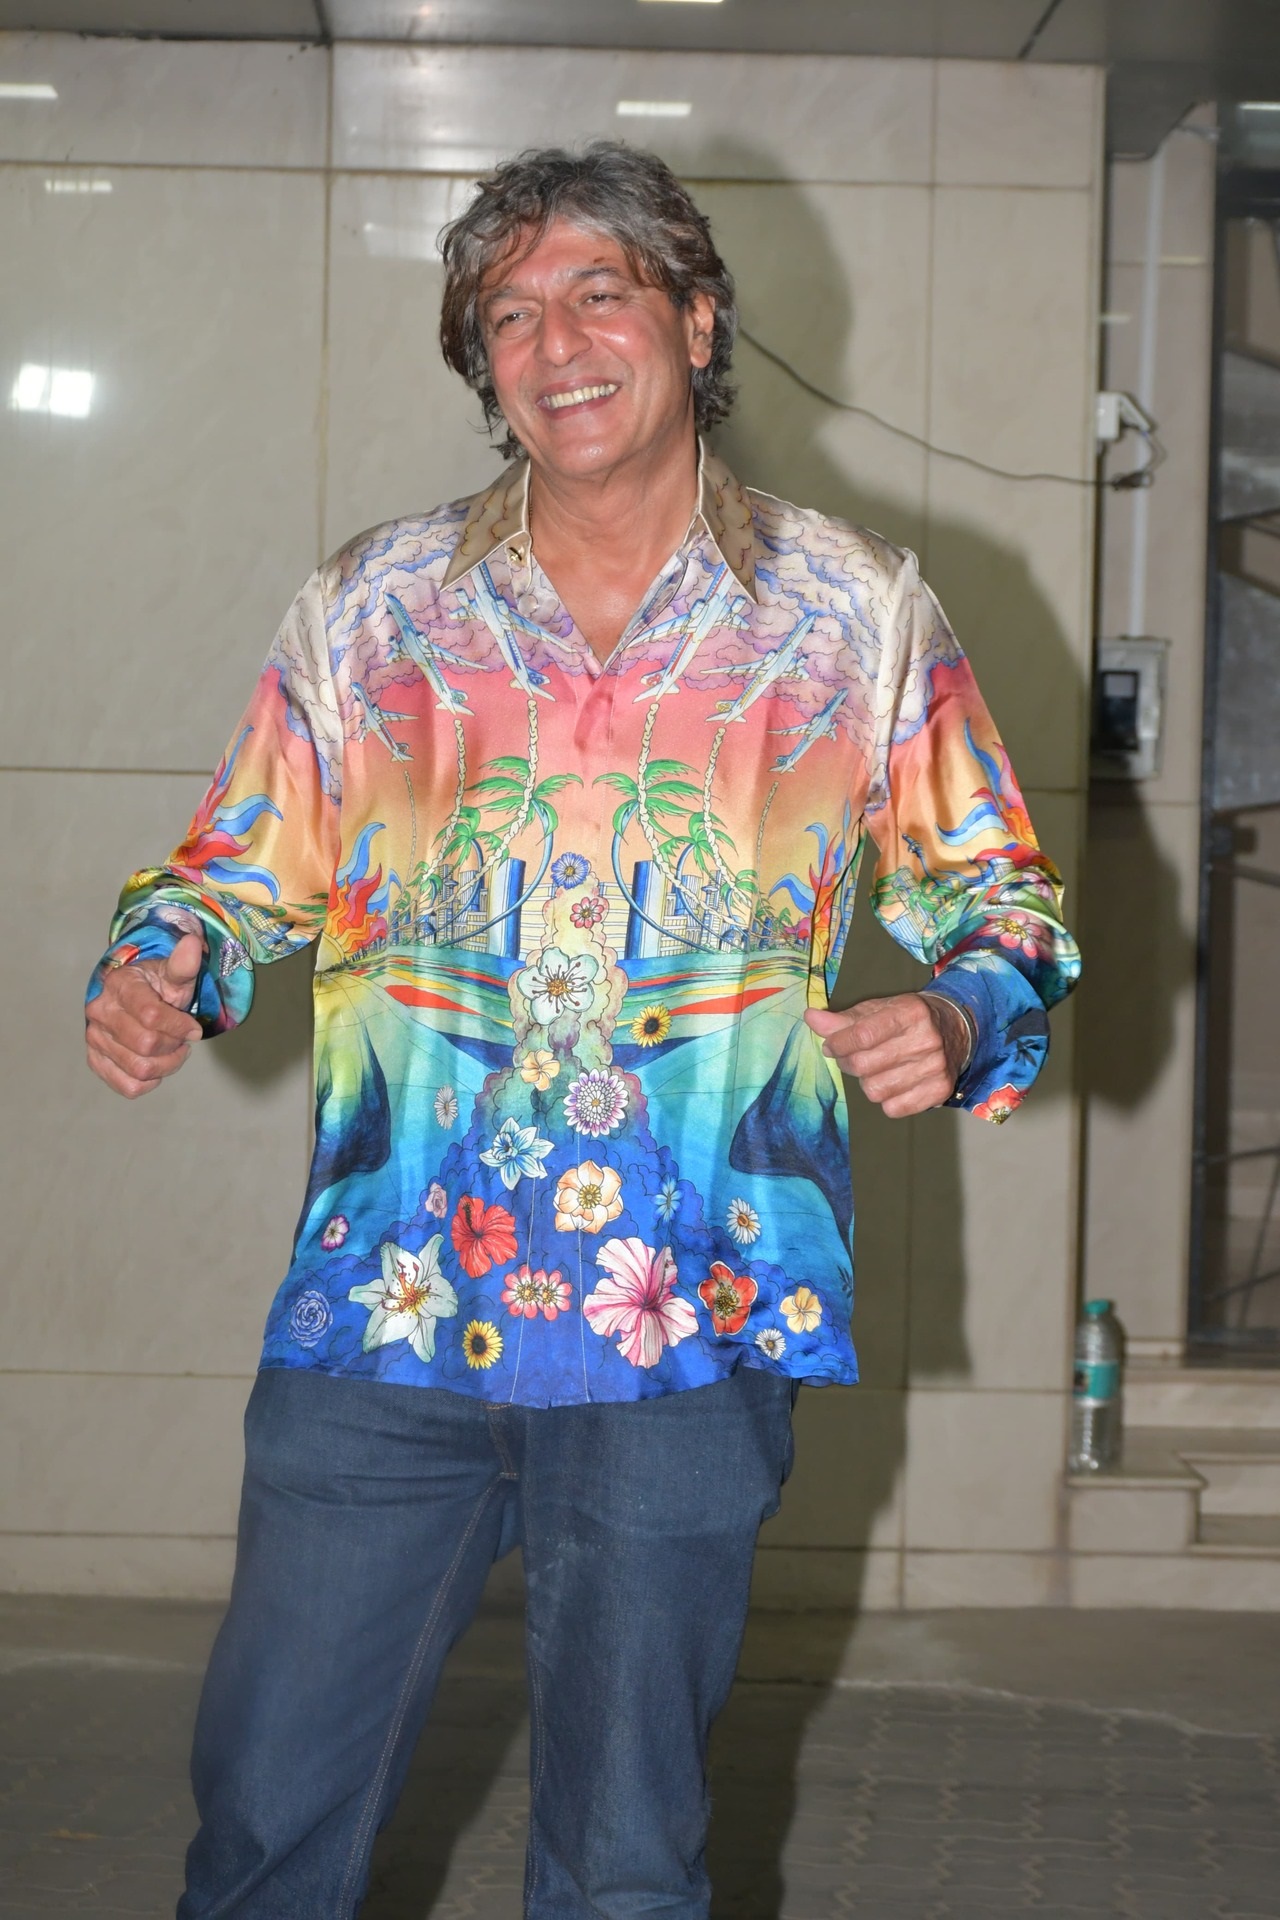 अभिनेता चंकी पांडे भी पार्टी में मल्टी कलर शर्ट और ब्लू डेनिम पैंट पहन दिखाई दिए.